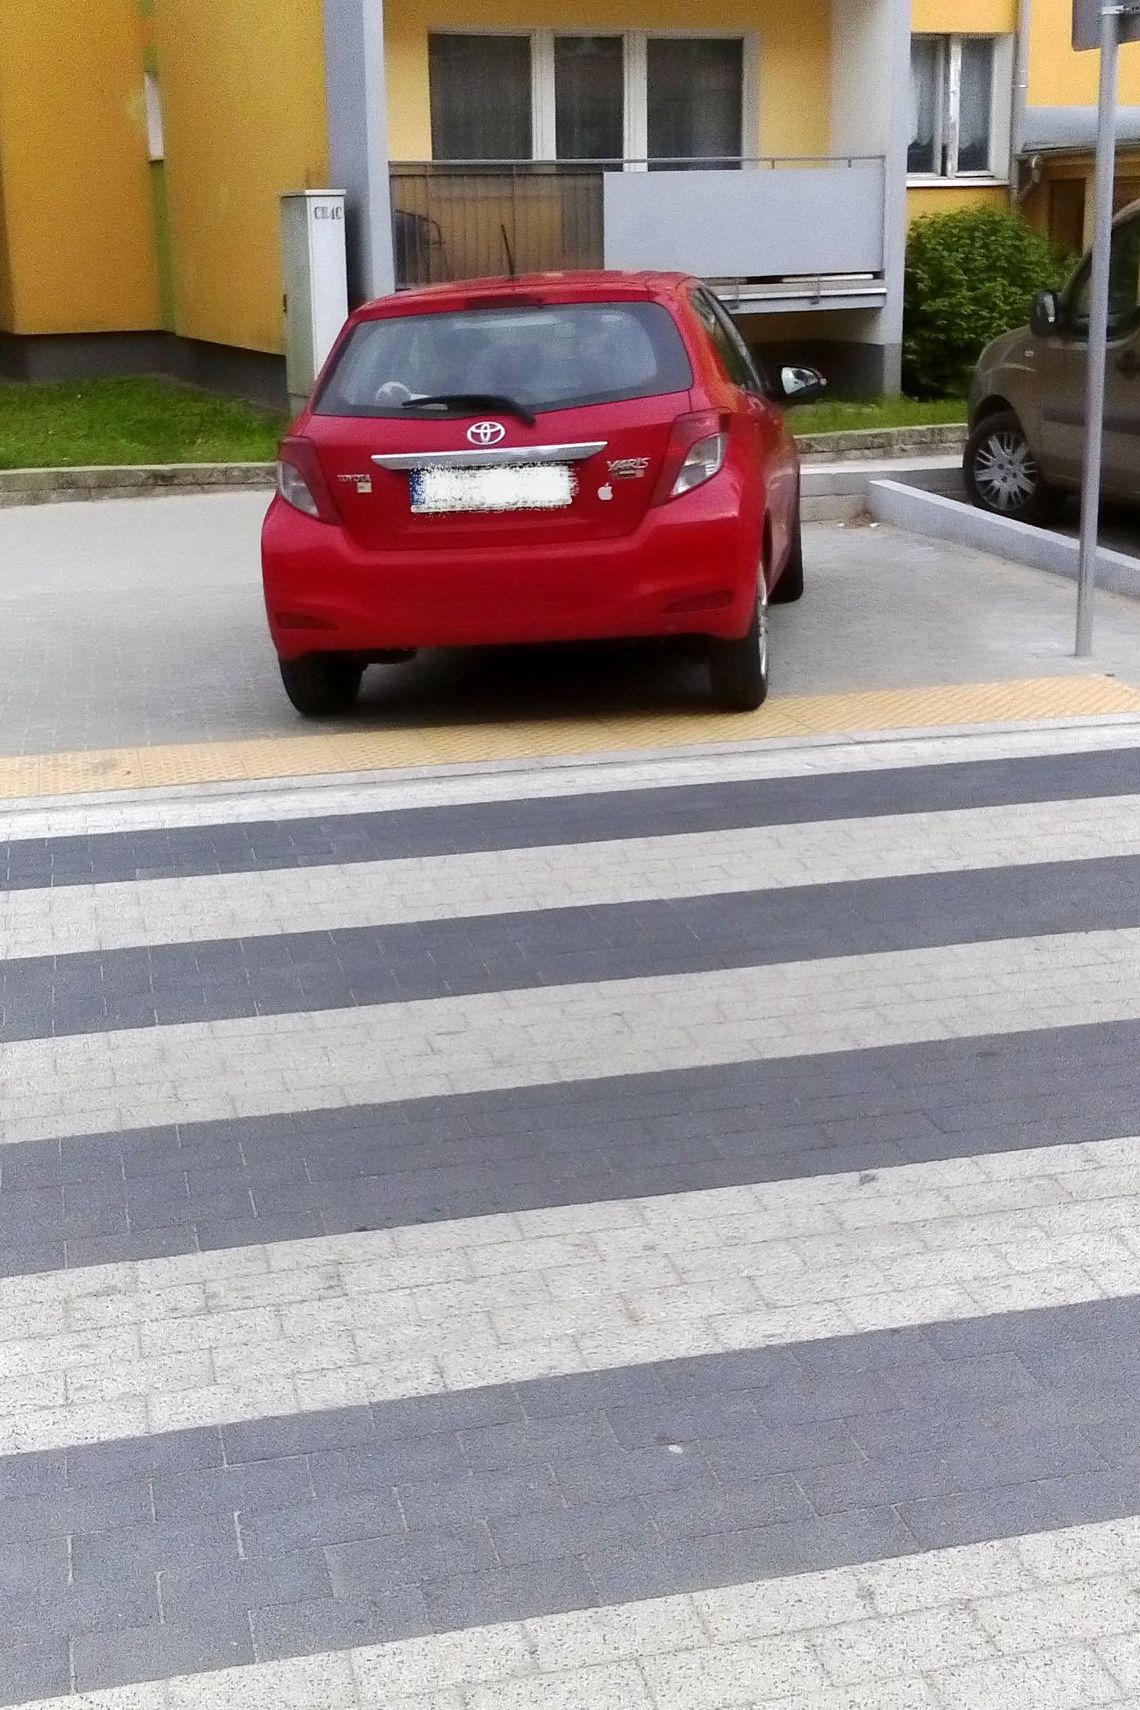 Mistrz parkowania stanął na pasach